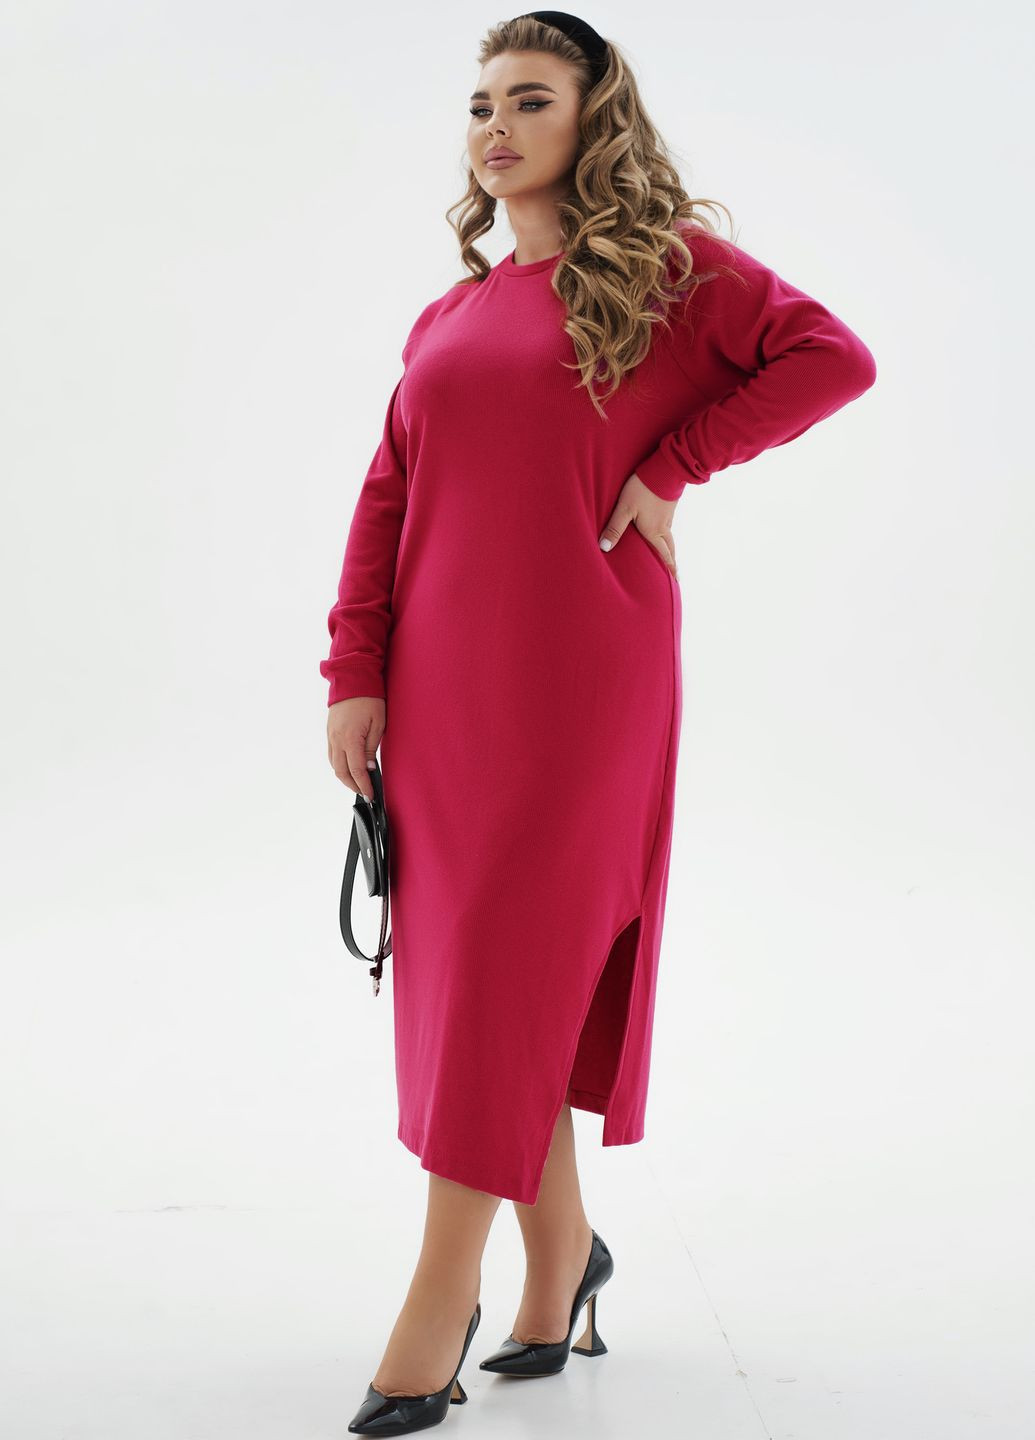 Малинова повсякденний тепла ангорова сукня із поясом в подарунок Minova однотонна